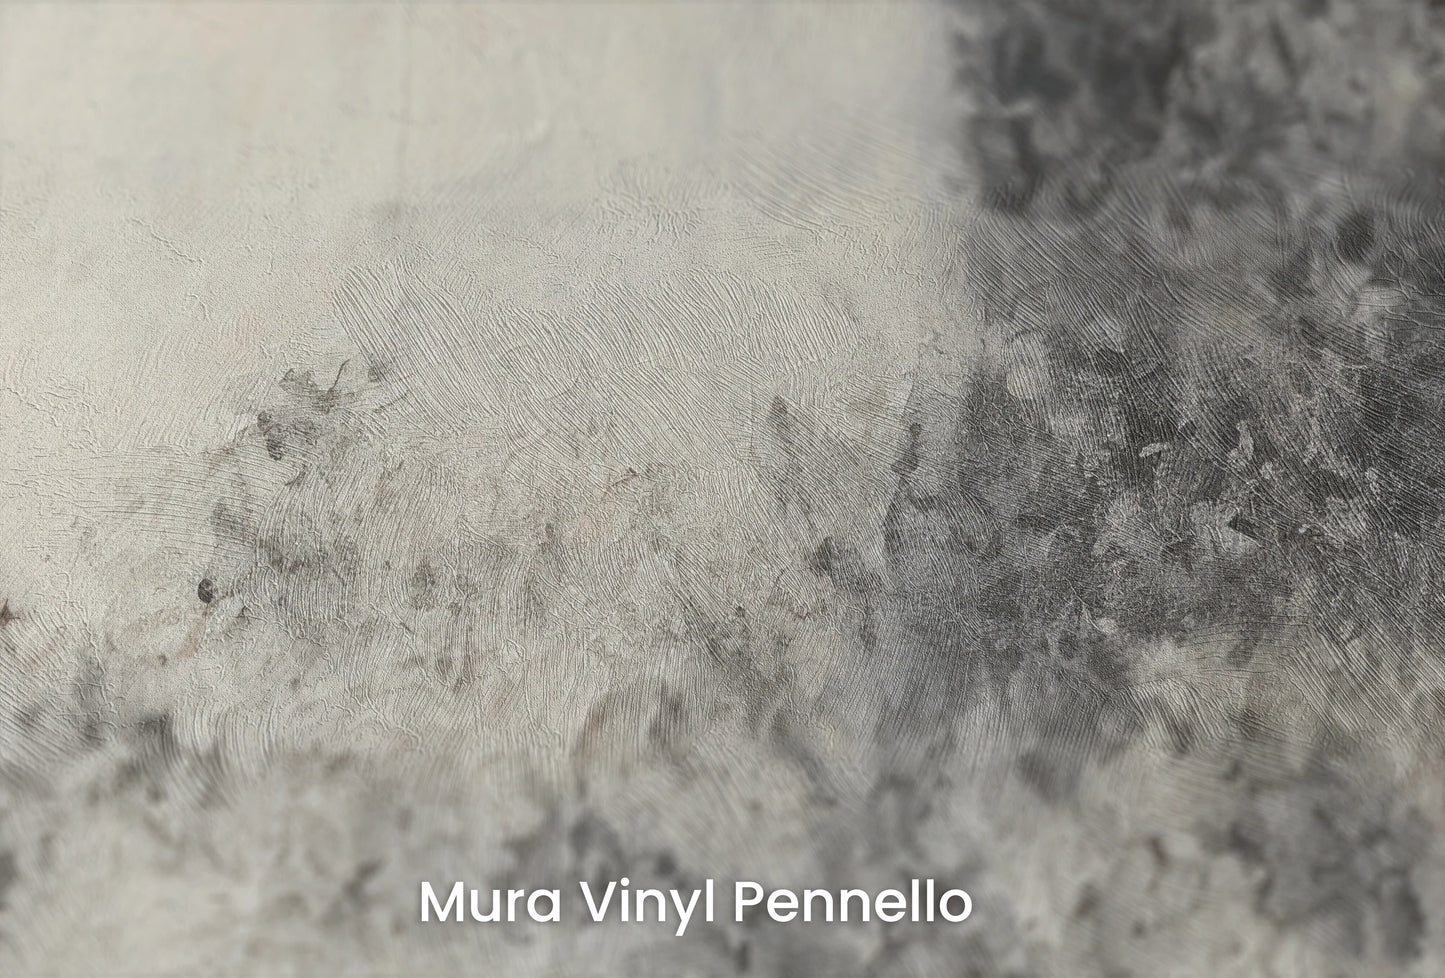 Zbliżenie na artystyczną fototapetę o nazwie Full Moon Calm na podłożu Mura Vinyl Pennello - faktura pociągnięć pędzla malarskiego.